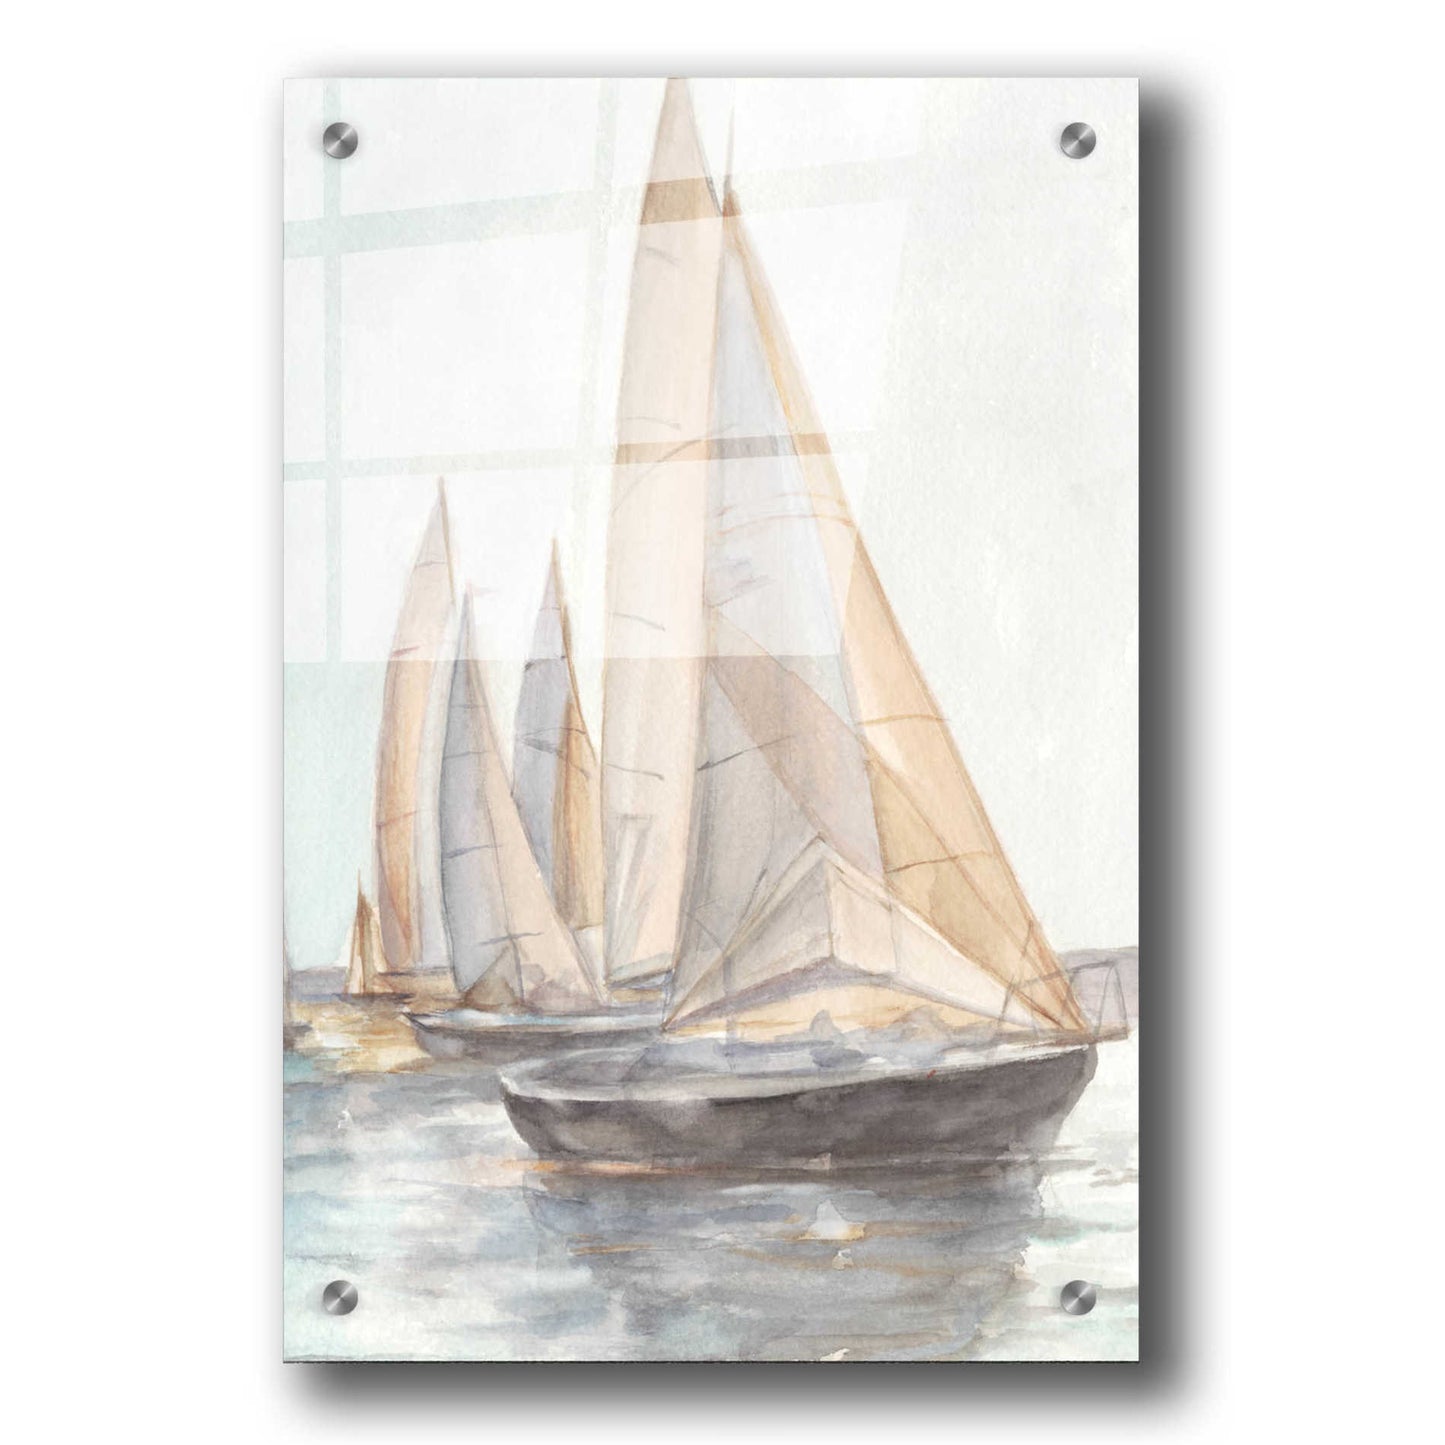 Epic Art 'Plein Air Sailboats II' by Ethan Harper, Acrylic Glass Wall Art,24x36